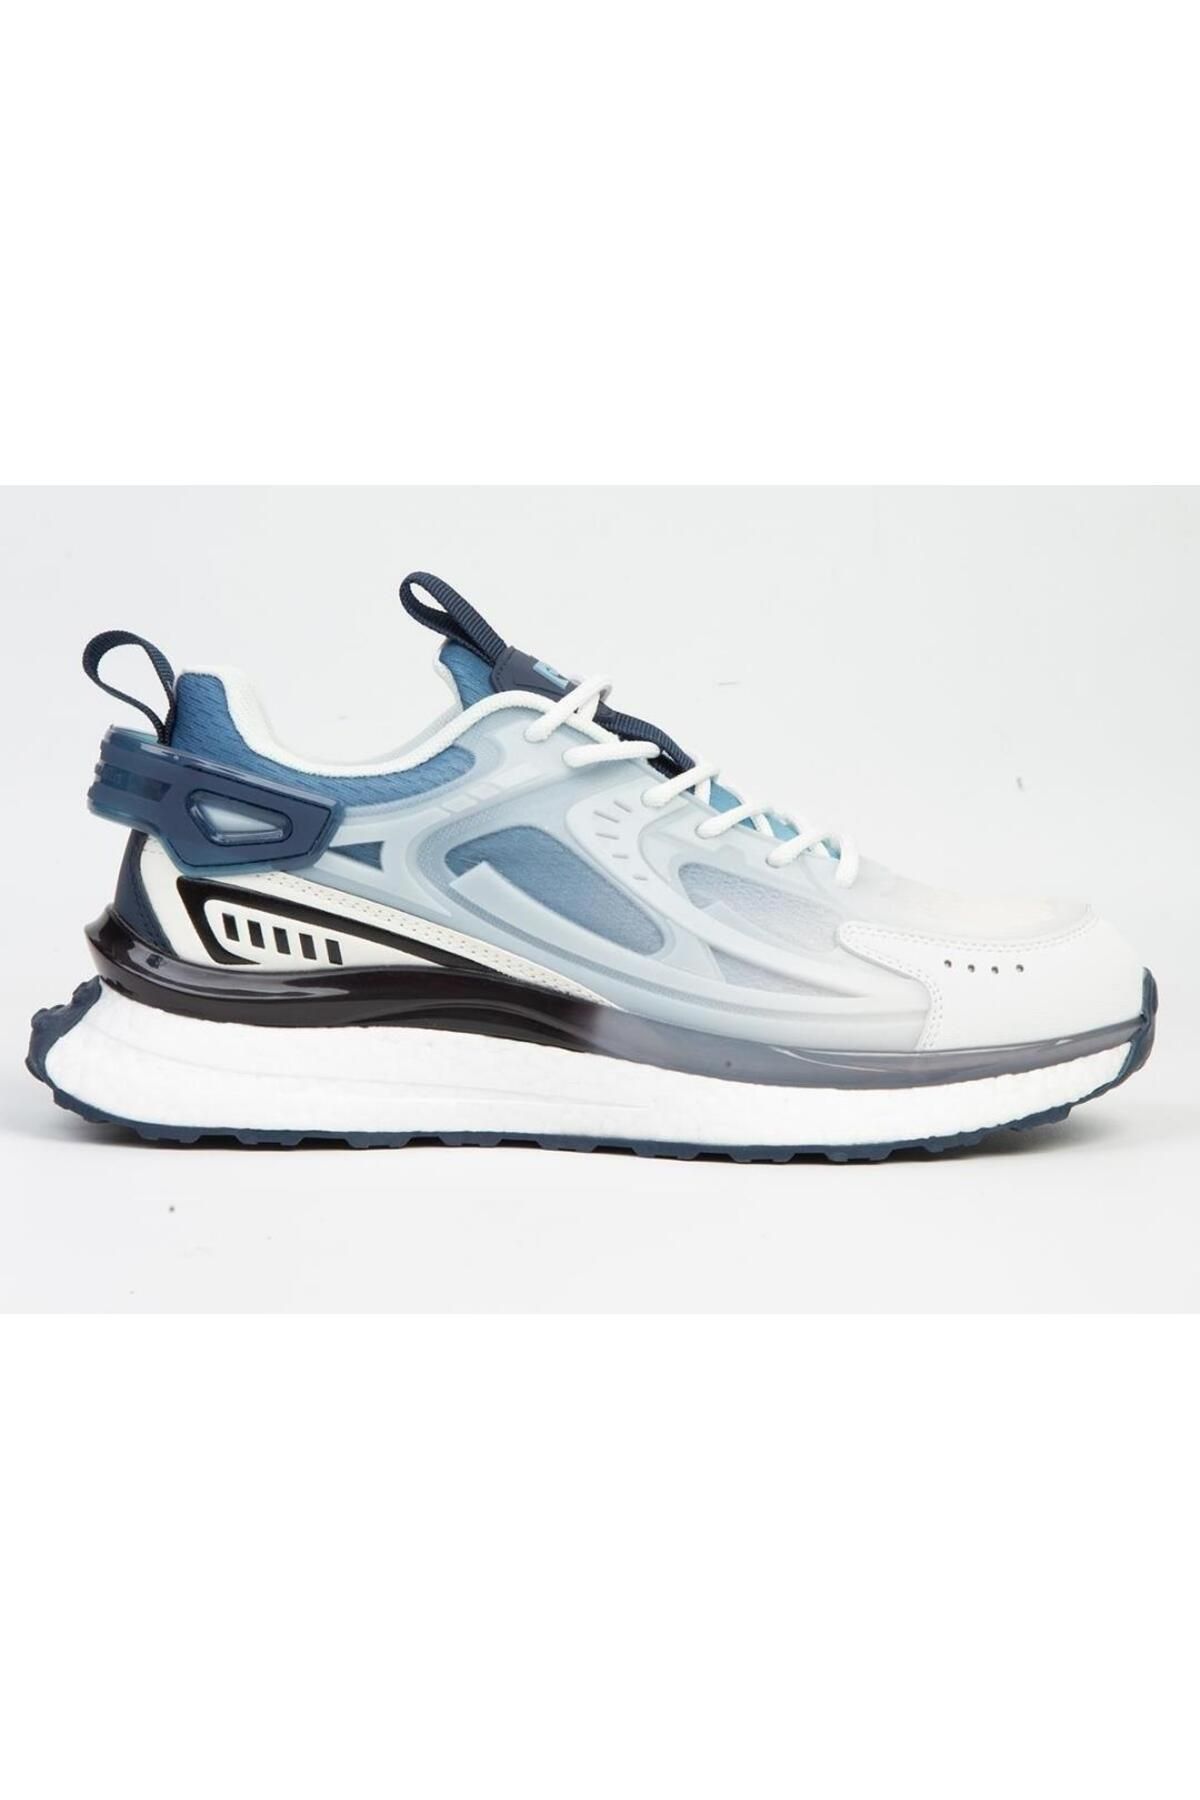 Pierre Cardin Pci-10105 Erkek İthal Premium Sneaker Spor Ayakkabı